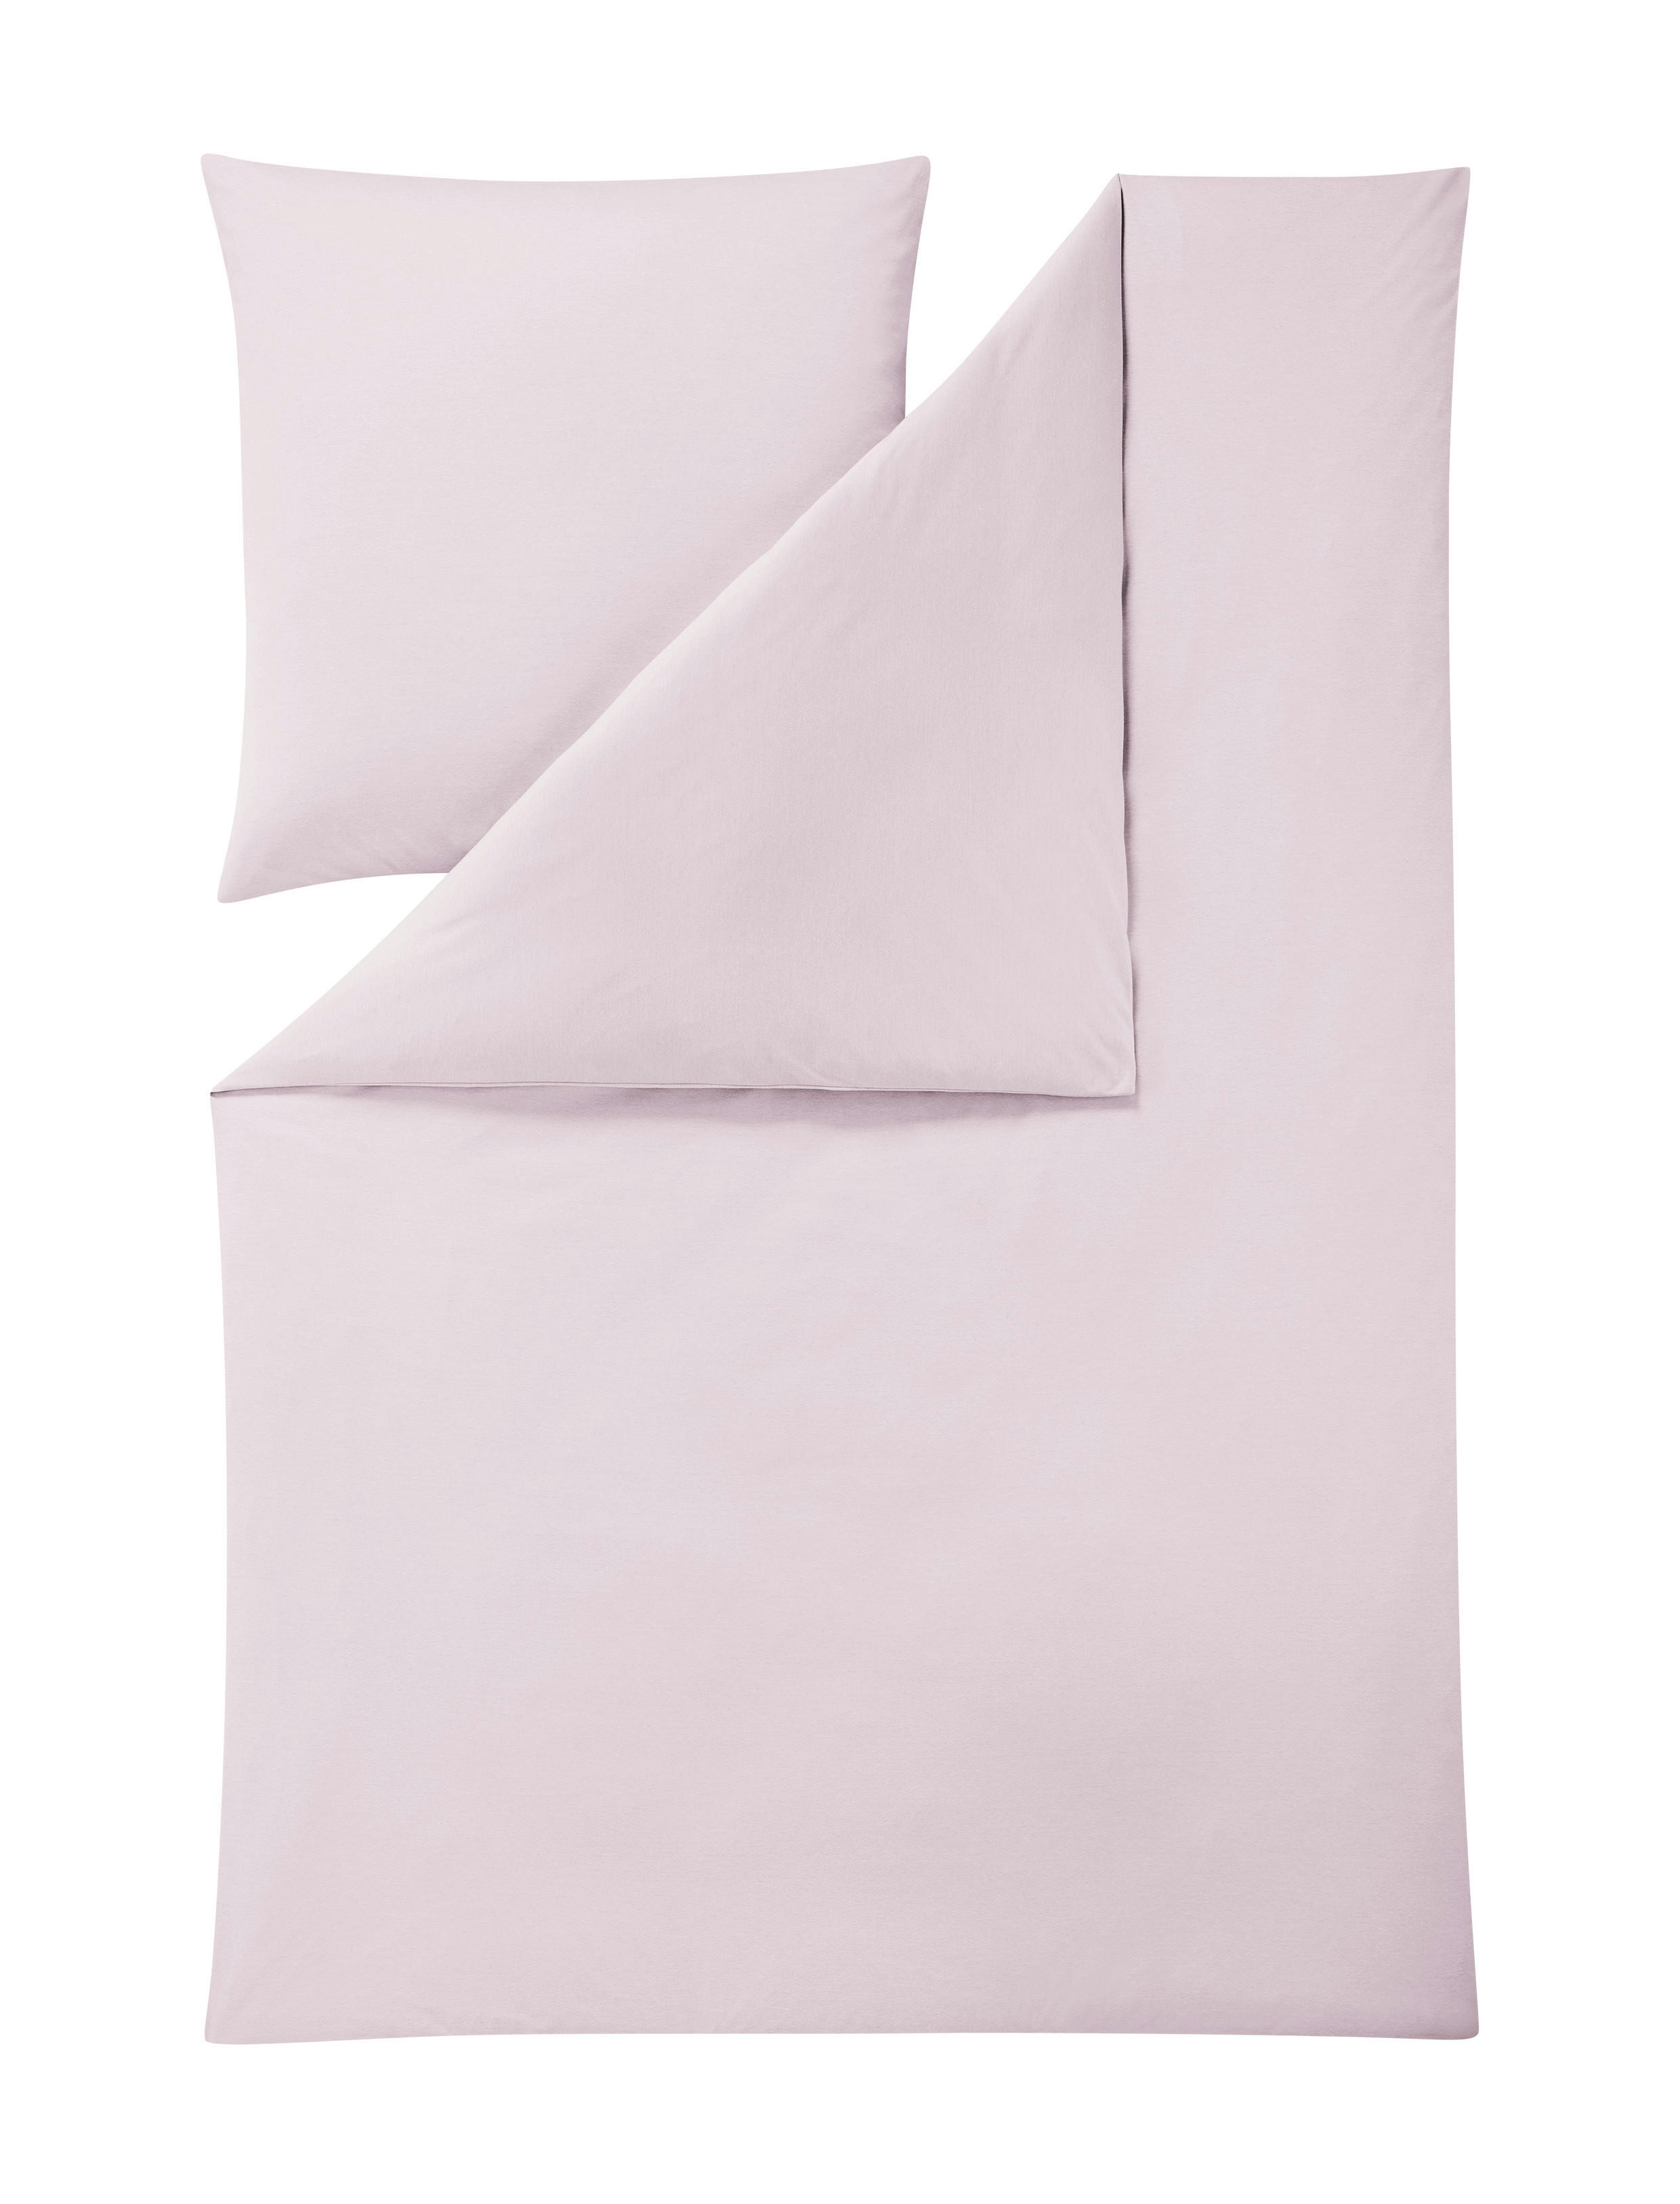 BETTWÄSCHE 135/200 cm  - Rosa, Basics, Textil (135/200cm) - Estella